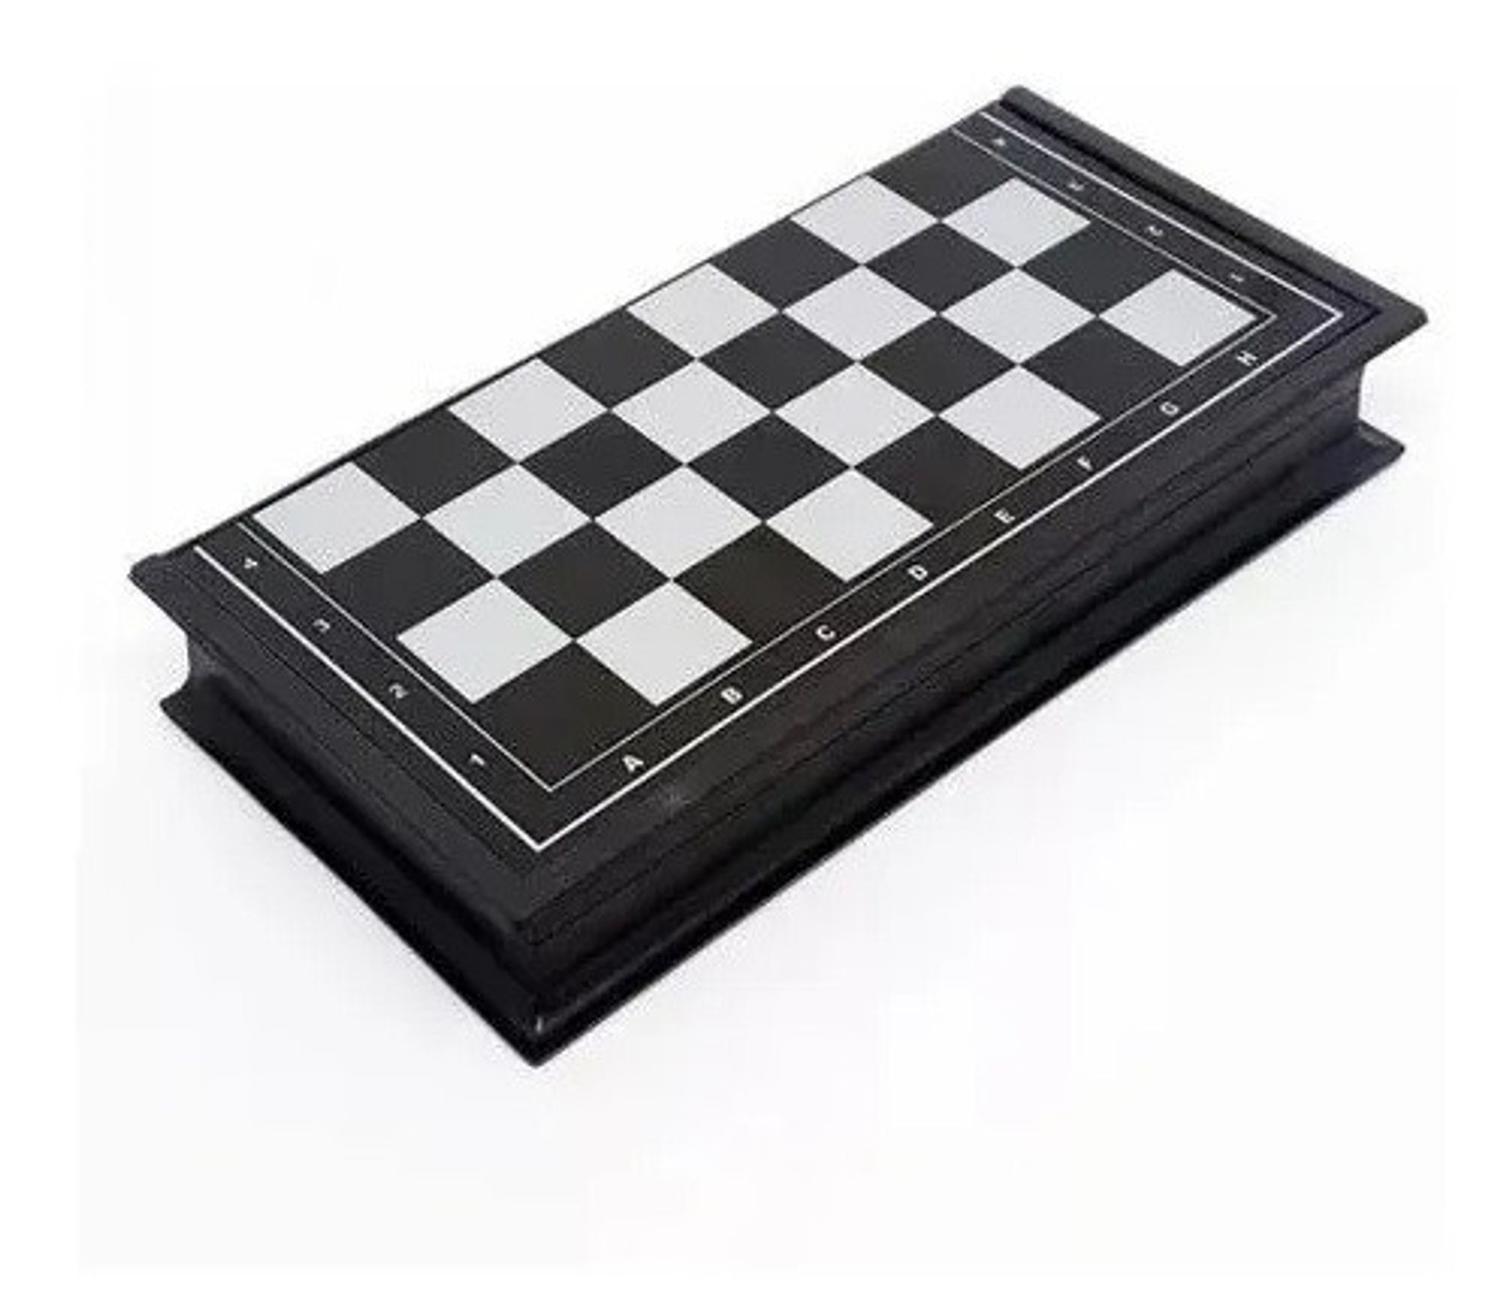 Tabuleiro de xadrez magnetico